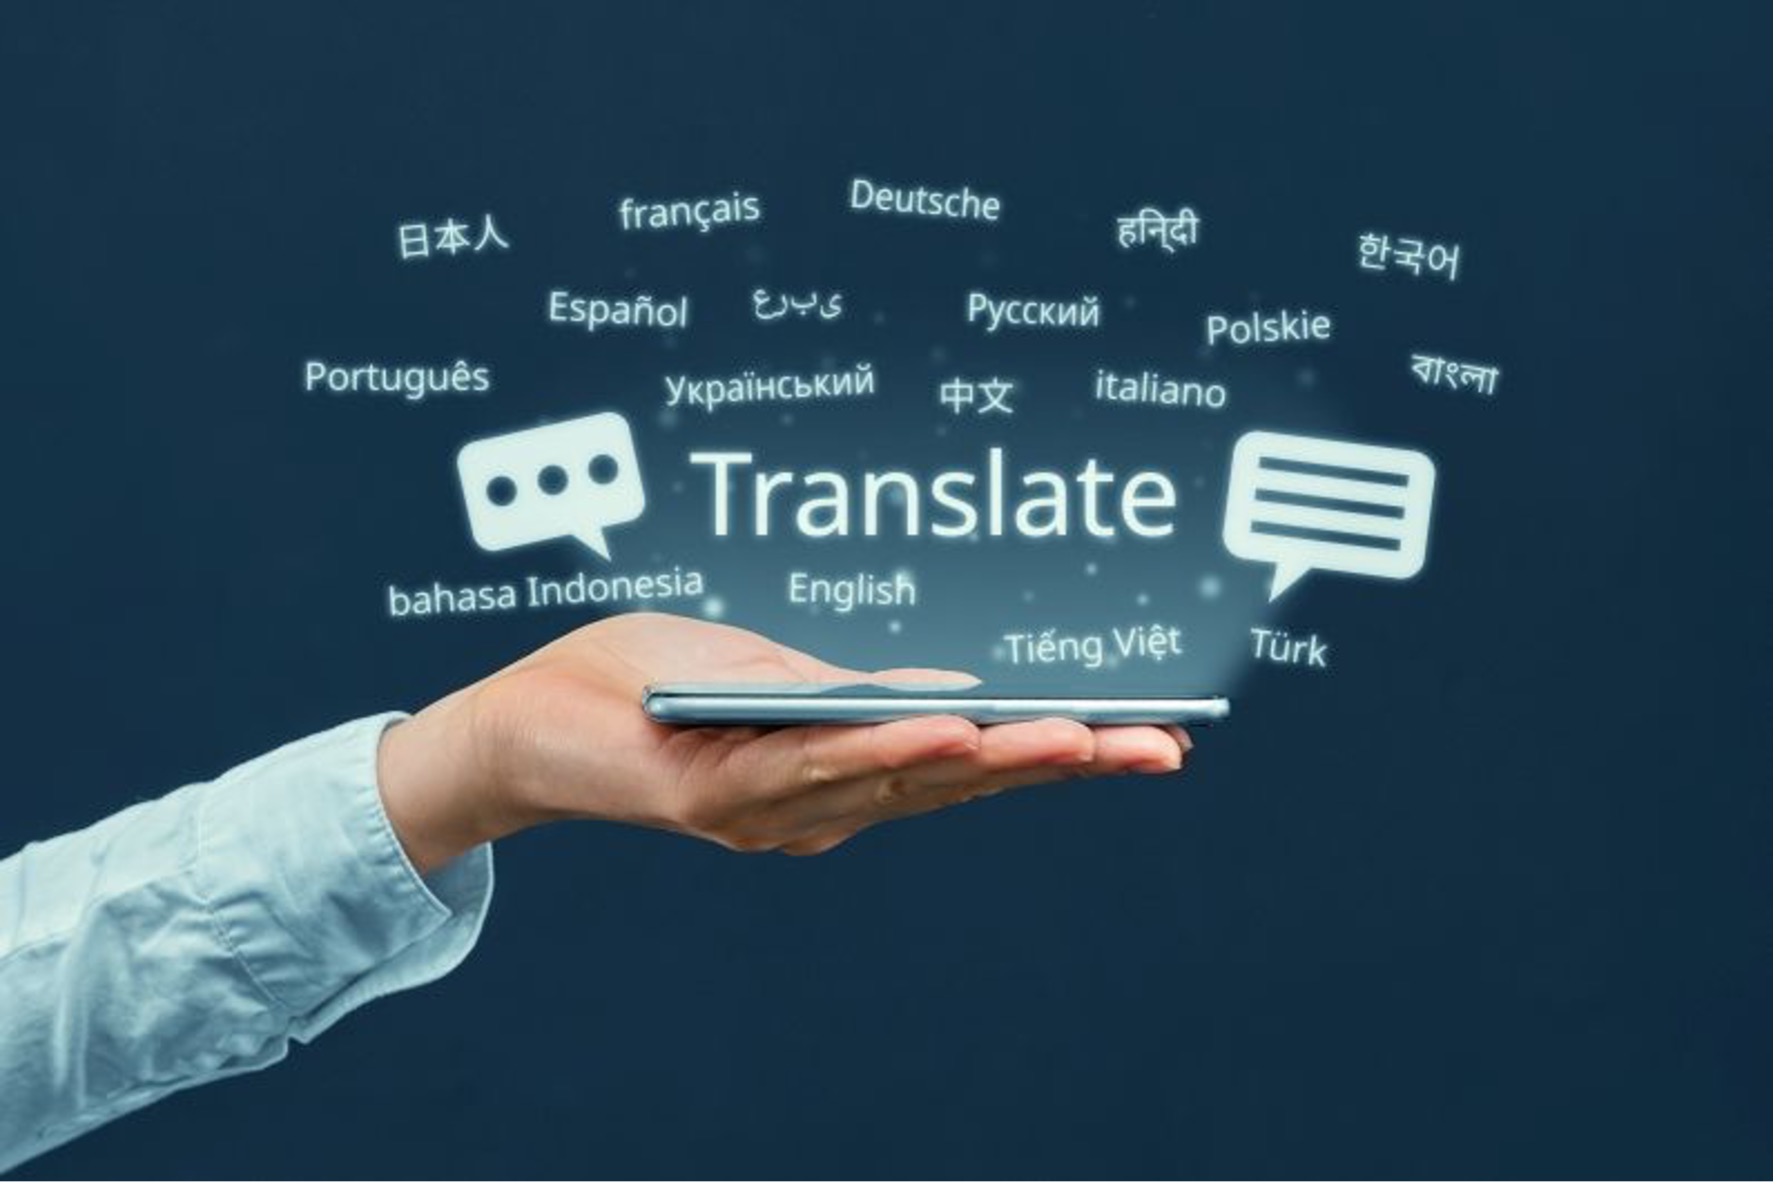 Hoeveel kosten vertaaldiensten